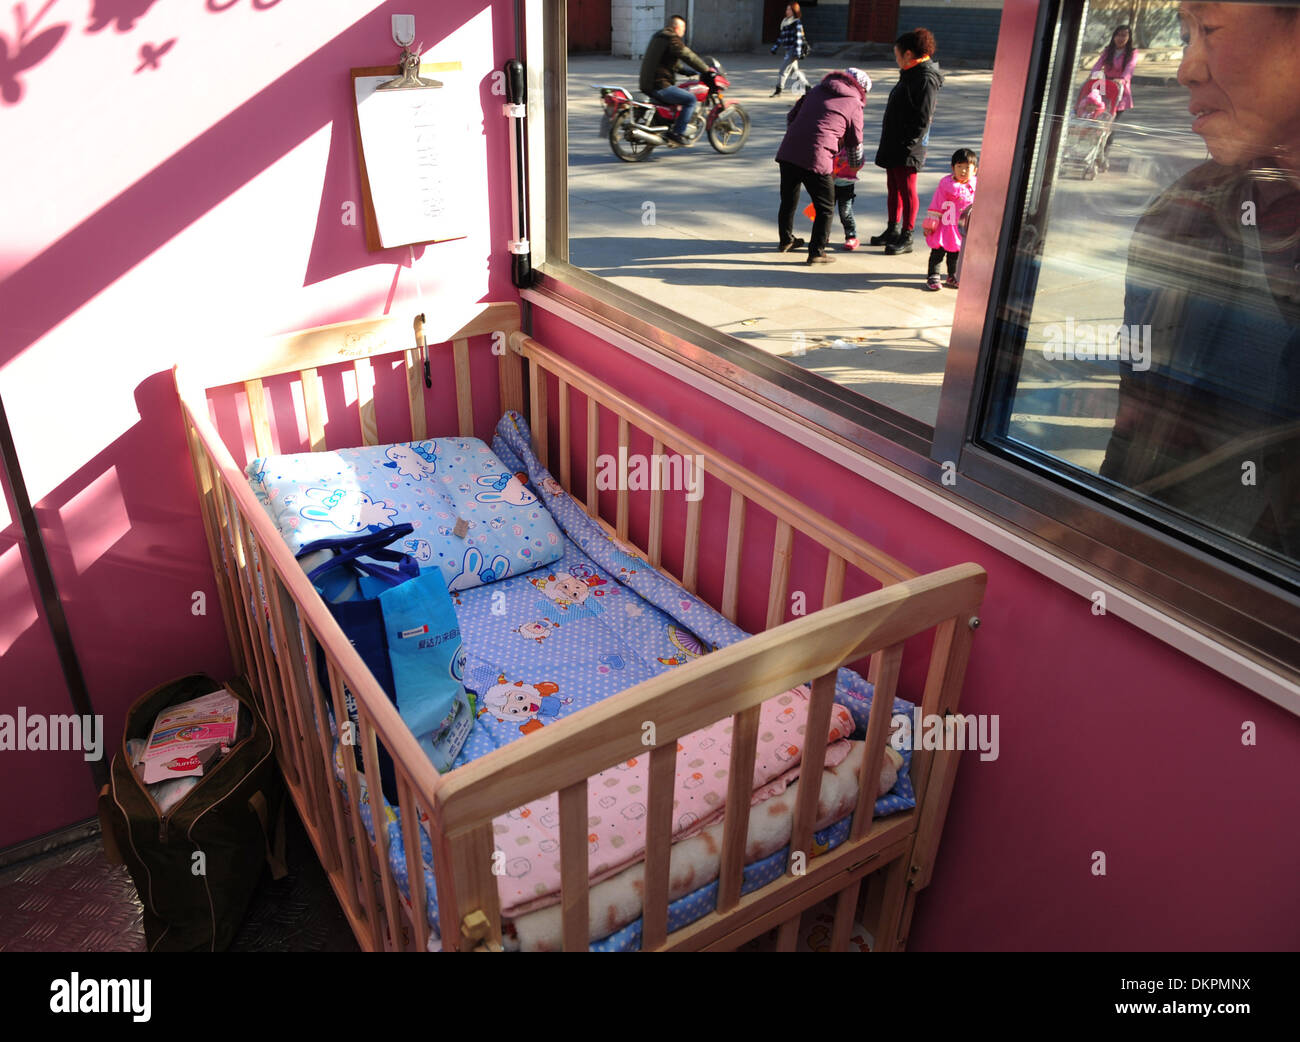 (131209) -- Xi'an, Dicembre 9, 2013 (Xinhua) -- Foto scattata il 9 dicembre 2013 mostra la culla all'interno del portello di bambino in Xi'an, capitale della Cina nord-occidentale della provincia di Shaanxi. Il primo bambino la berlina della provincia di Shaanxi è stato messo in uso a Xi'an di recente. Il rifugio ha ricevuto un neonato abbandonato lo scorso 4 dicembre. Impostazione di portelli di bambino è vivacemente discussa argomento in Cina come molti credono che il 'baby haven" può ridurre il senso di colpa dei genitori e incoraggiare tali atti. Ma senza tali luoghi di sicurezza, i genitori nascondono i neonati in luoghi nascosti che non sono facilmente reperibili, causando la morte di molti bab indesiderati Foto Stock